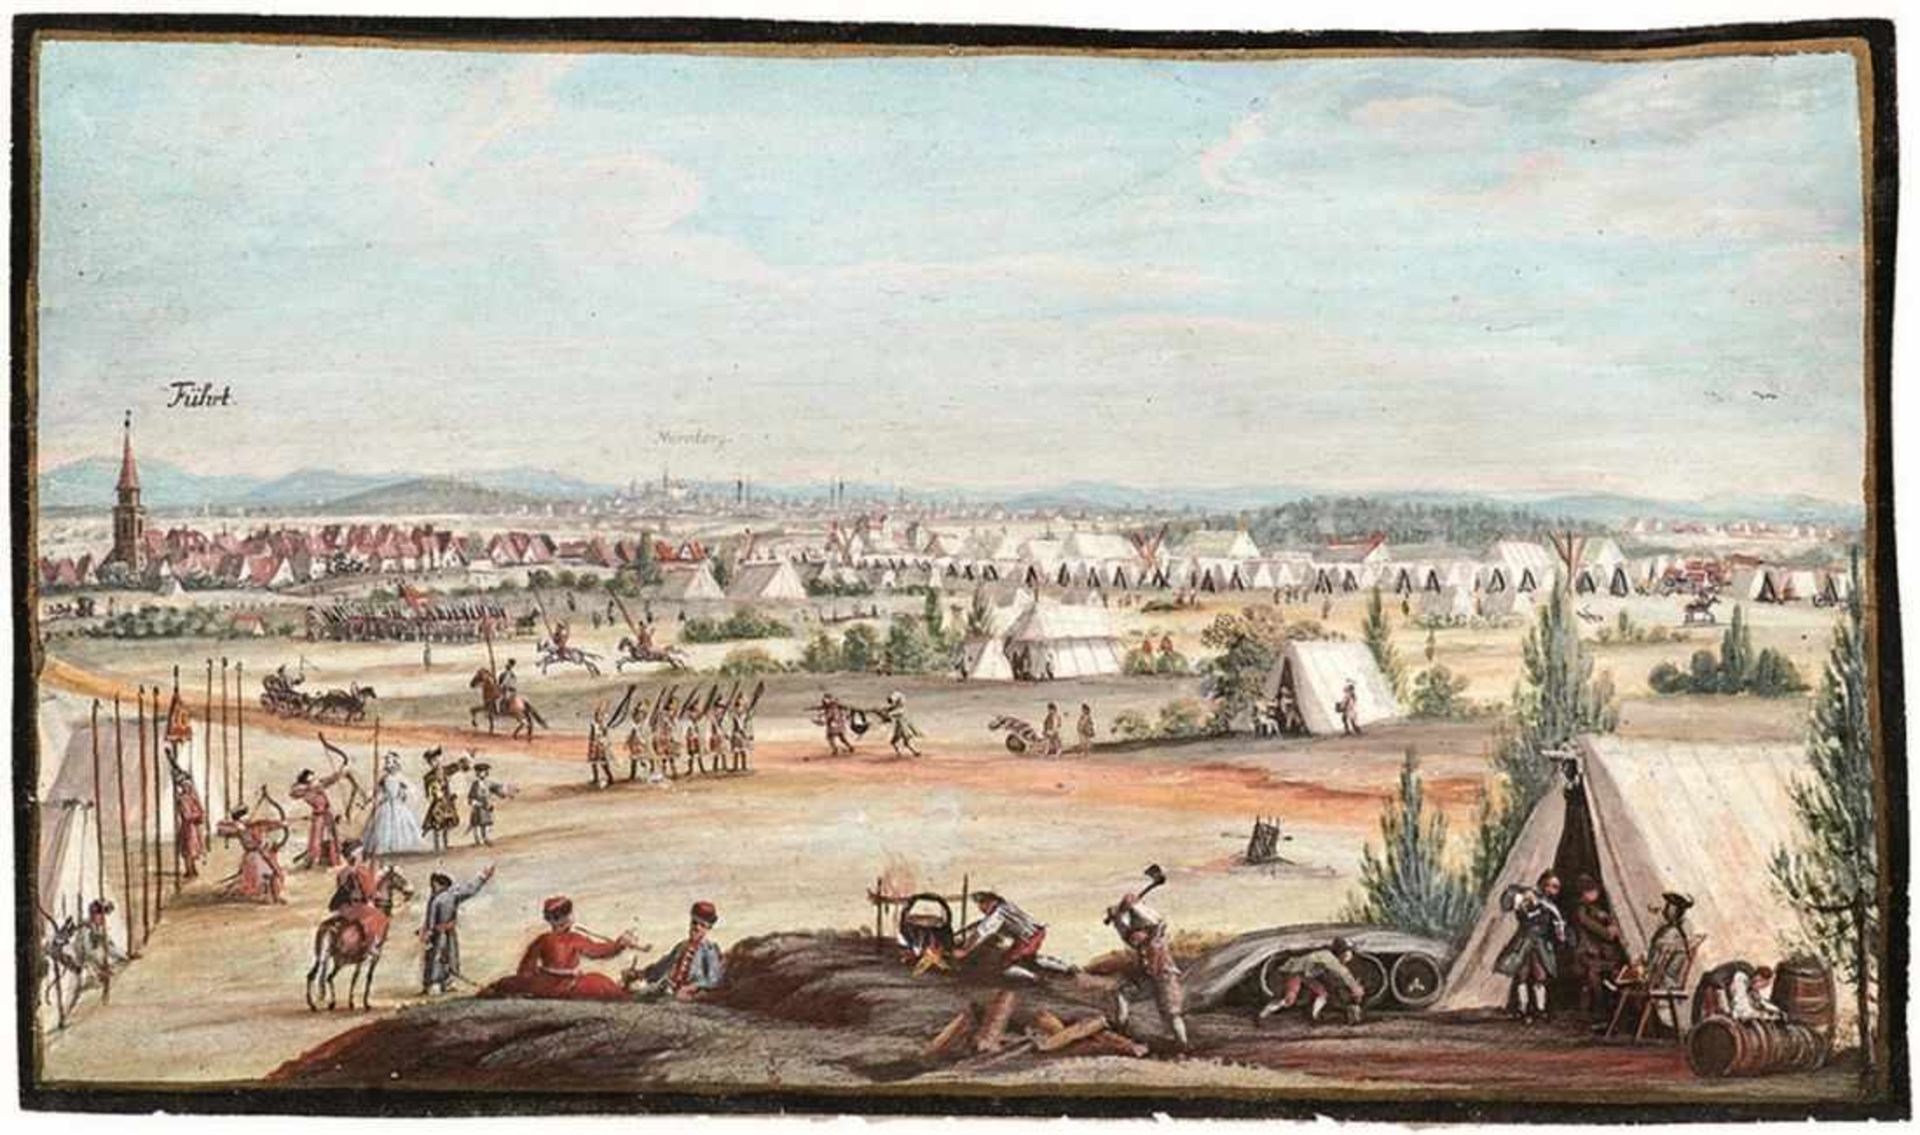 Heerlager bei Fürth 18. Jh. Eine russische Armee im kaiserlichen Dienst pausiert im Jahr 1735 bei